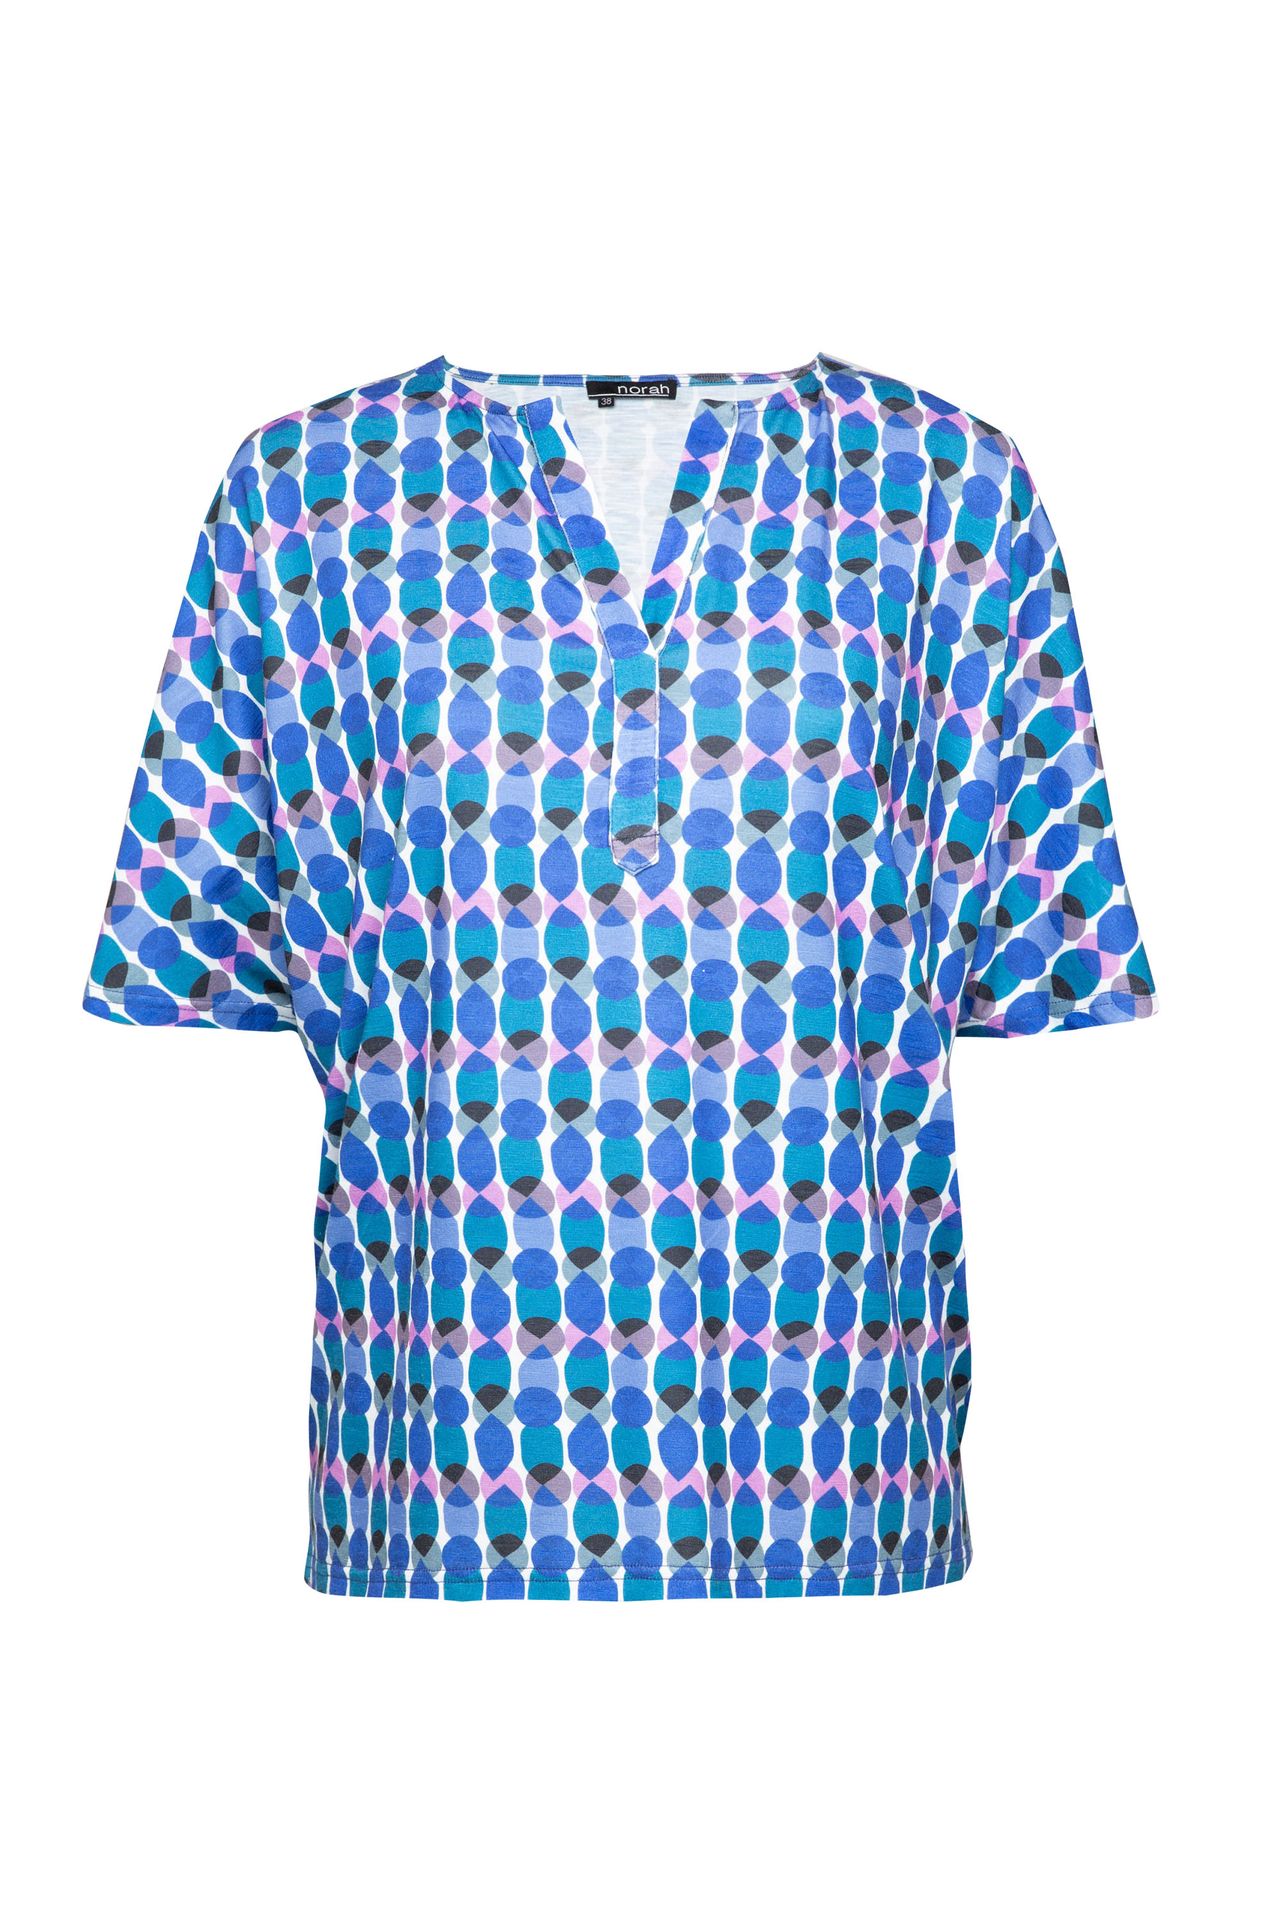 Norah Shirt blauw multi cobalt multicolor 212756-469